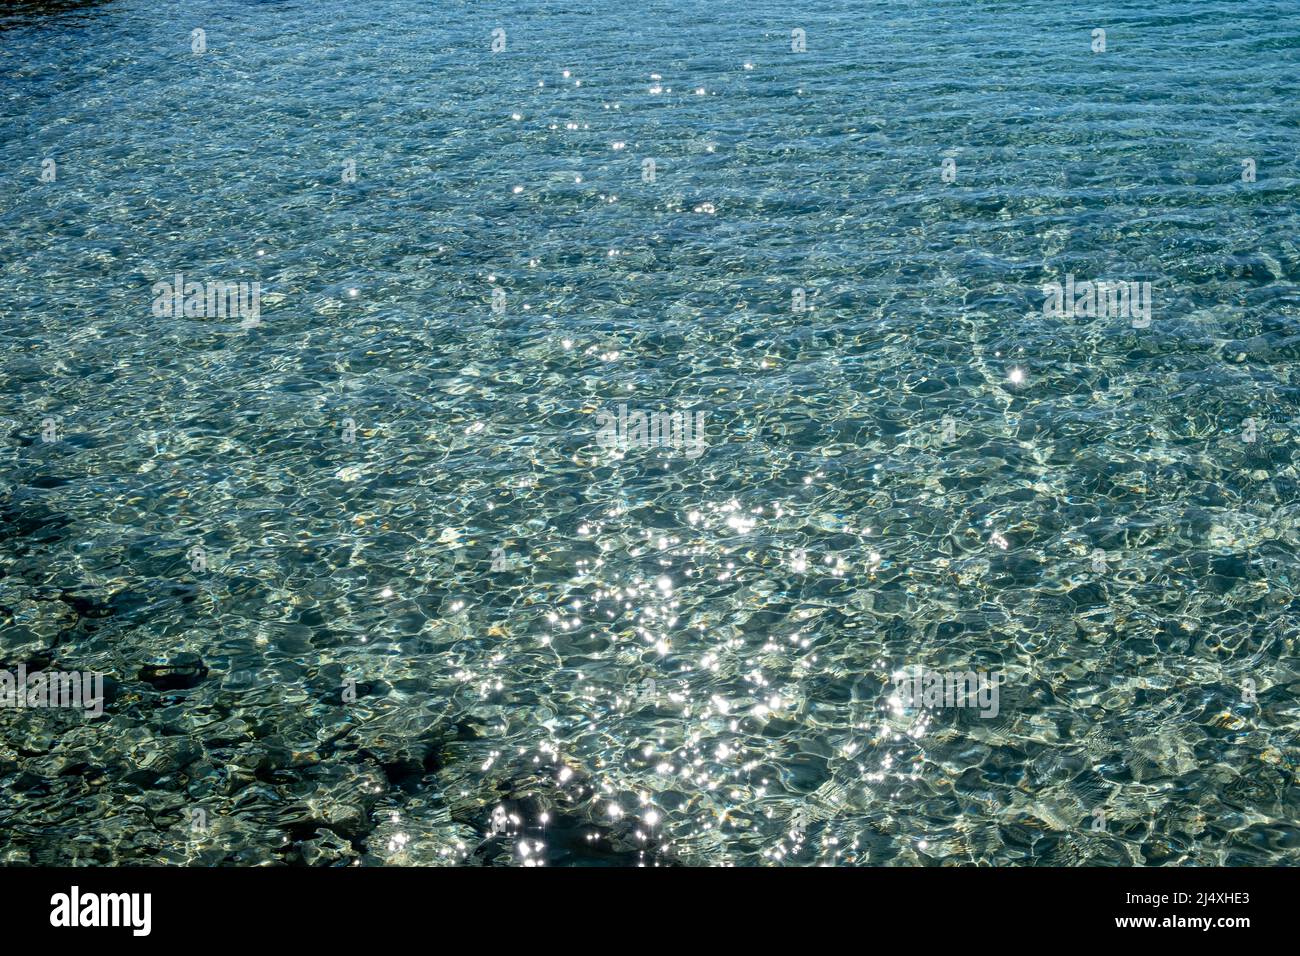 Meerwasseroberfläche mit glänzenden Reflexionen Hintergrund. Klares, flaches, blau schimmerndes Wasser und felsiger Meeresboden, oben. Ägäis Griechenland Stockfoto